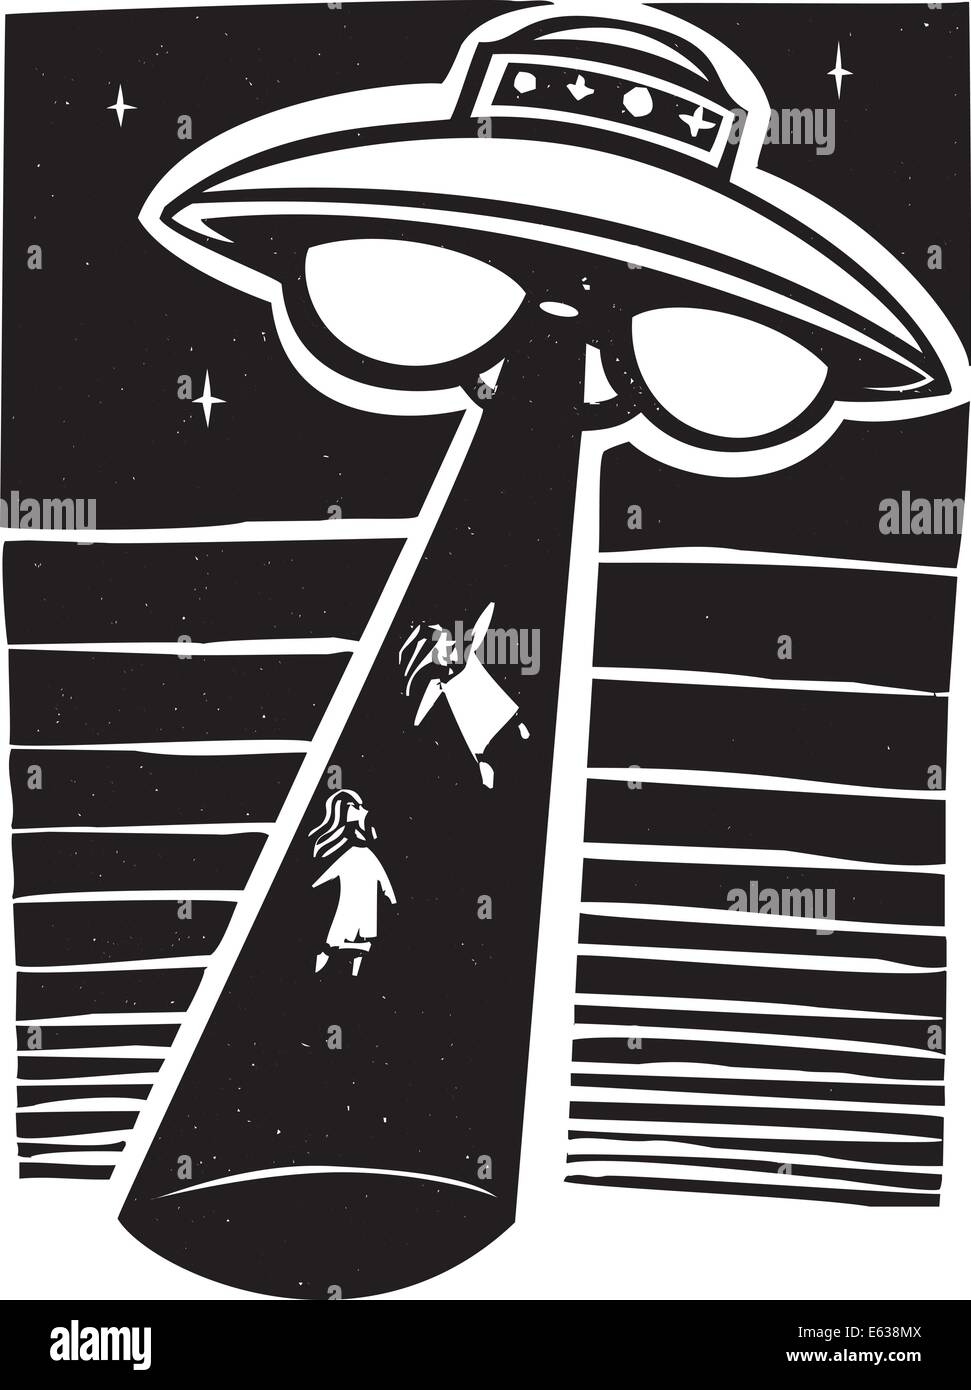 Image style AWoodcut exotiques un alien abduction de nuit avec une soucoupe volante. Illustration de Vecteur